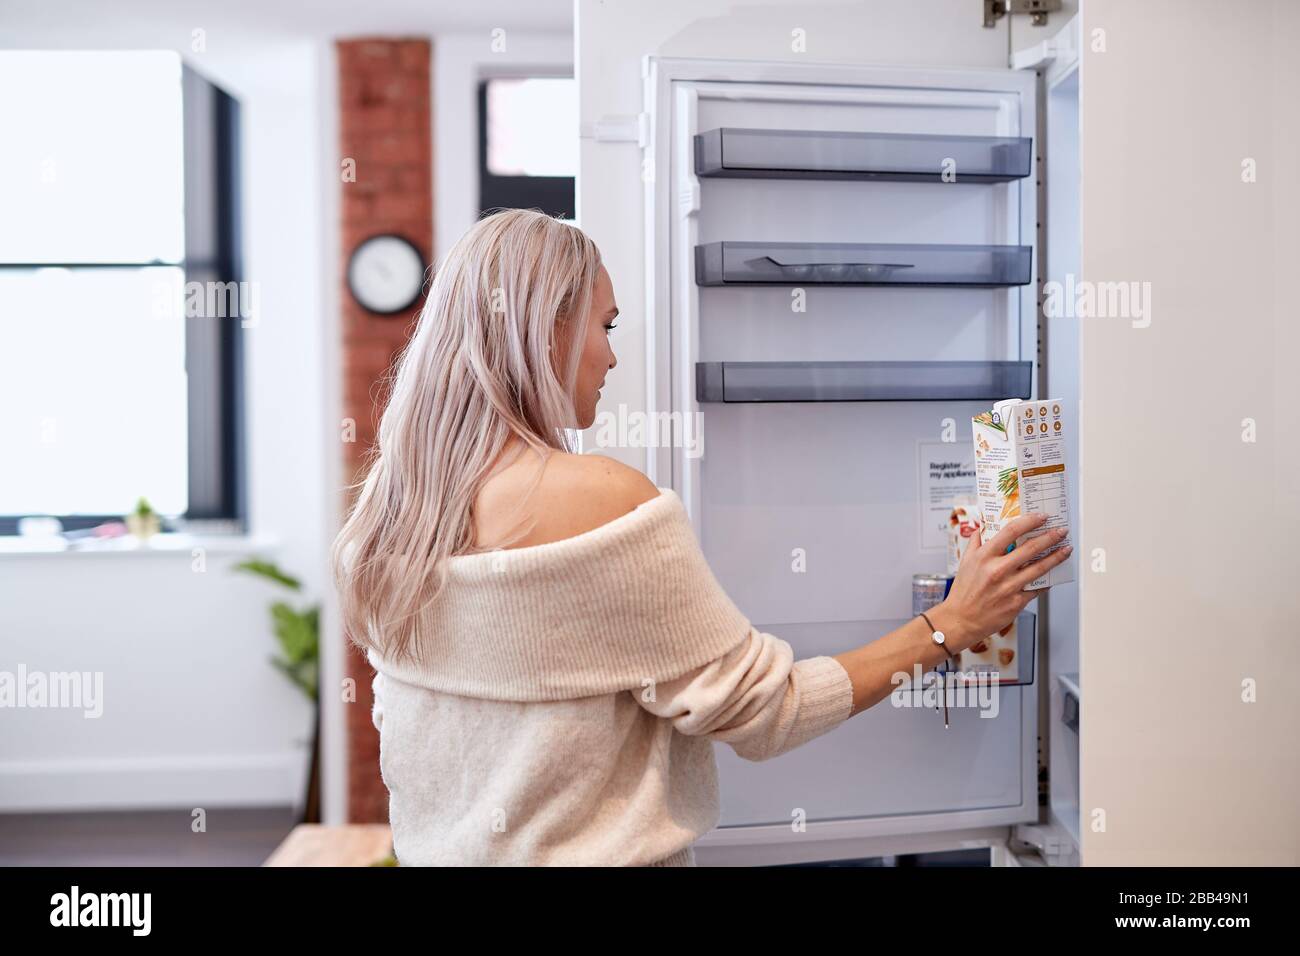 confezione femmina di latte di avena in frigorifero Foto Stock